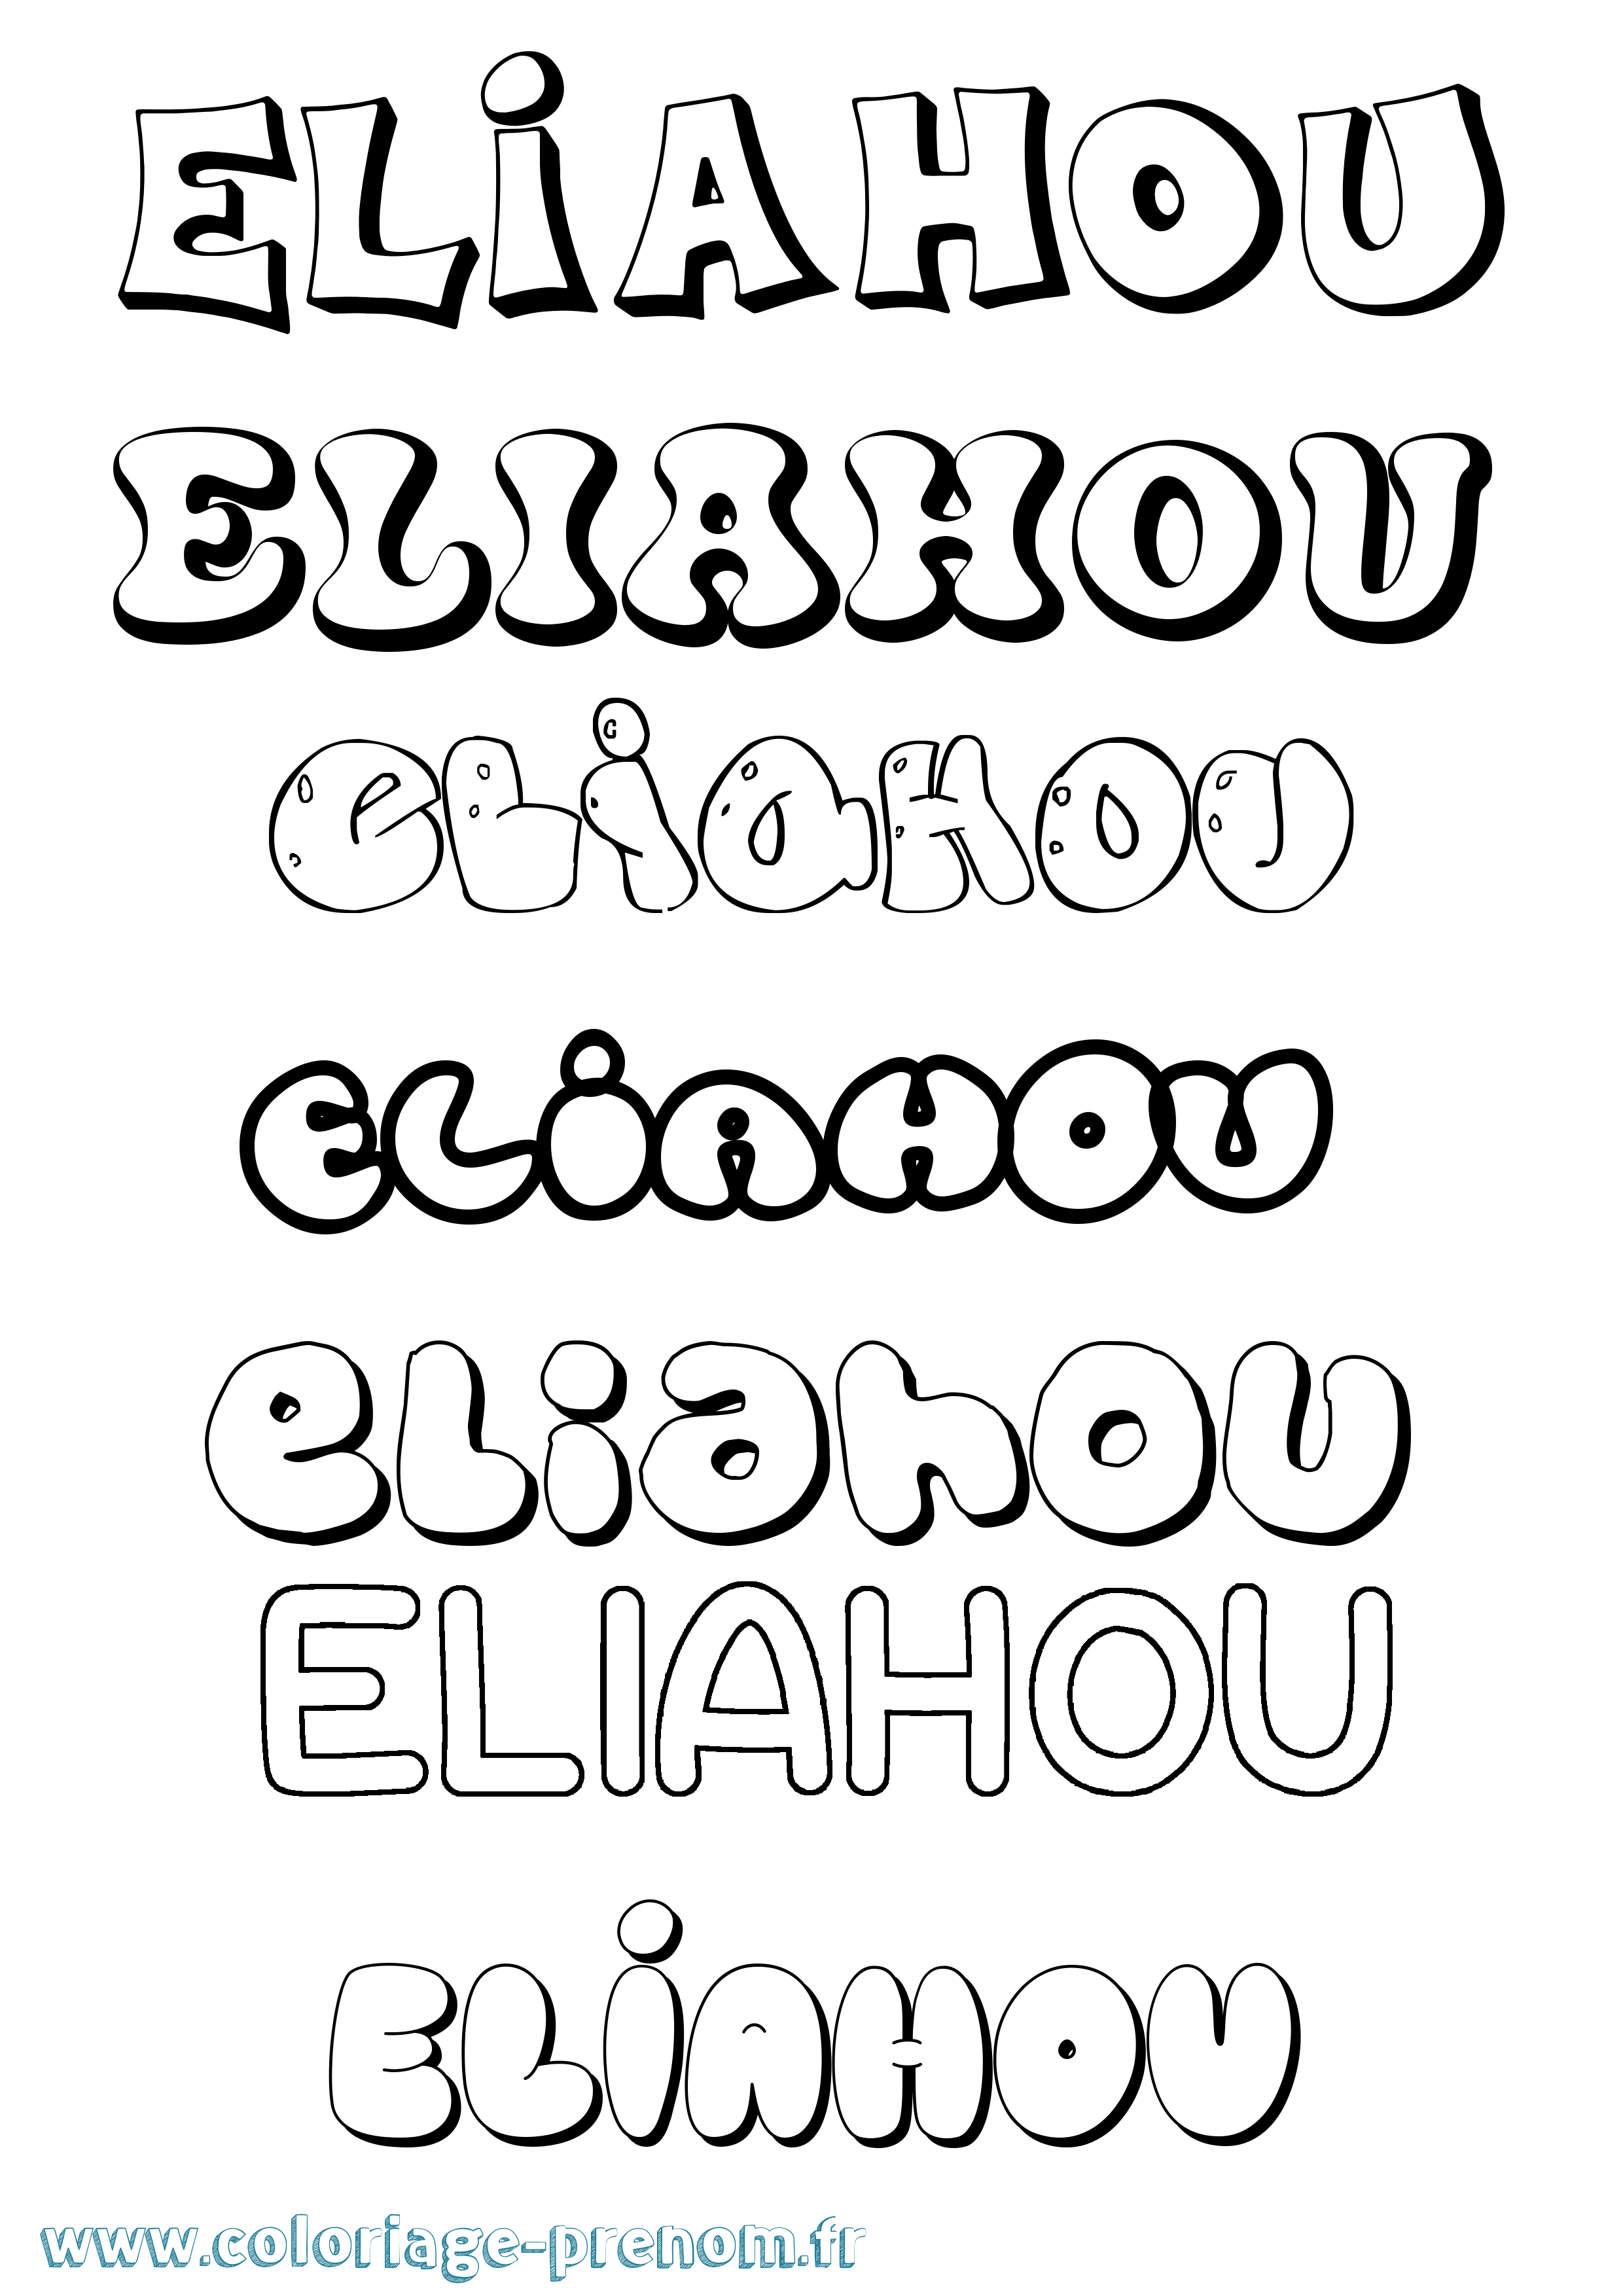 Coloriage prénom Eliahou Bubble